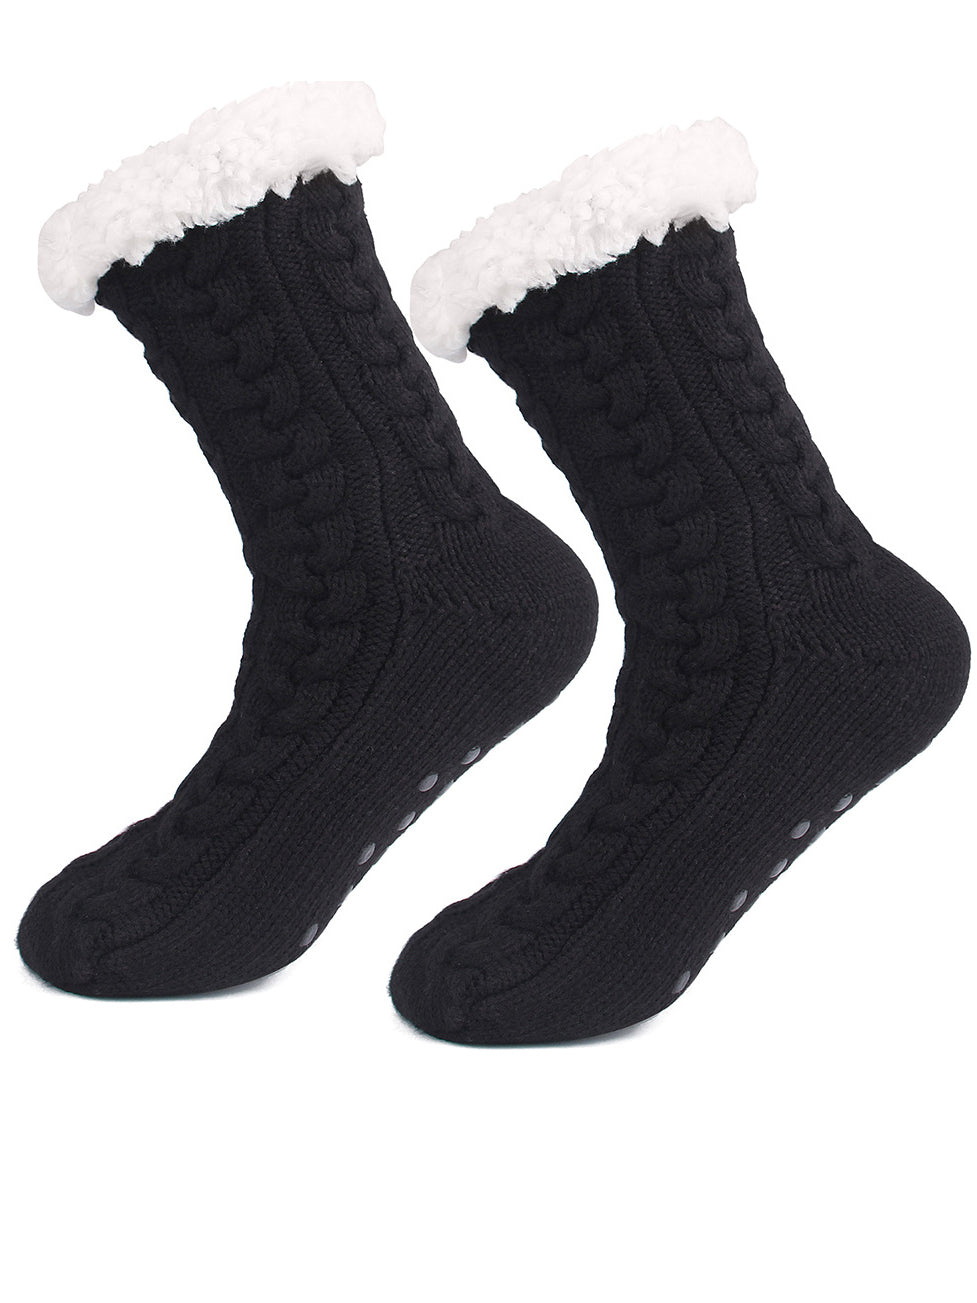 <tc>2 porų kojinių rinkinys Clarisse smėlio ir juodos spalvos</tc>